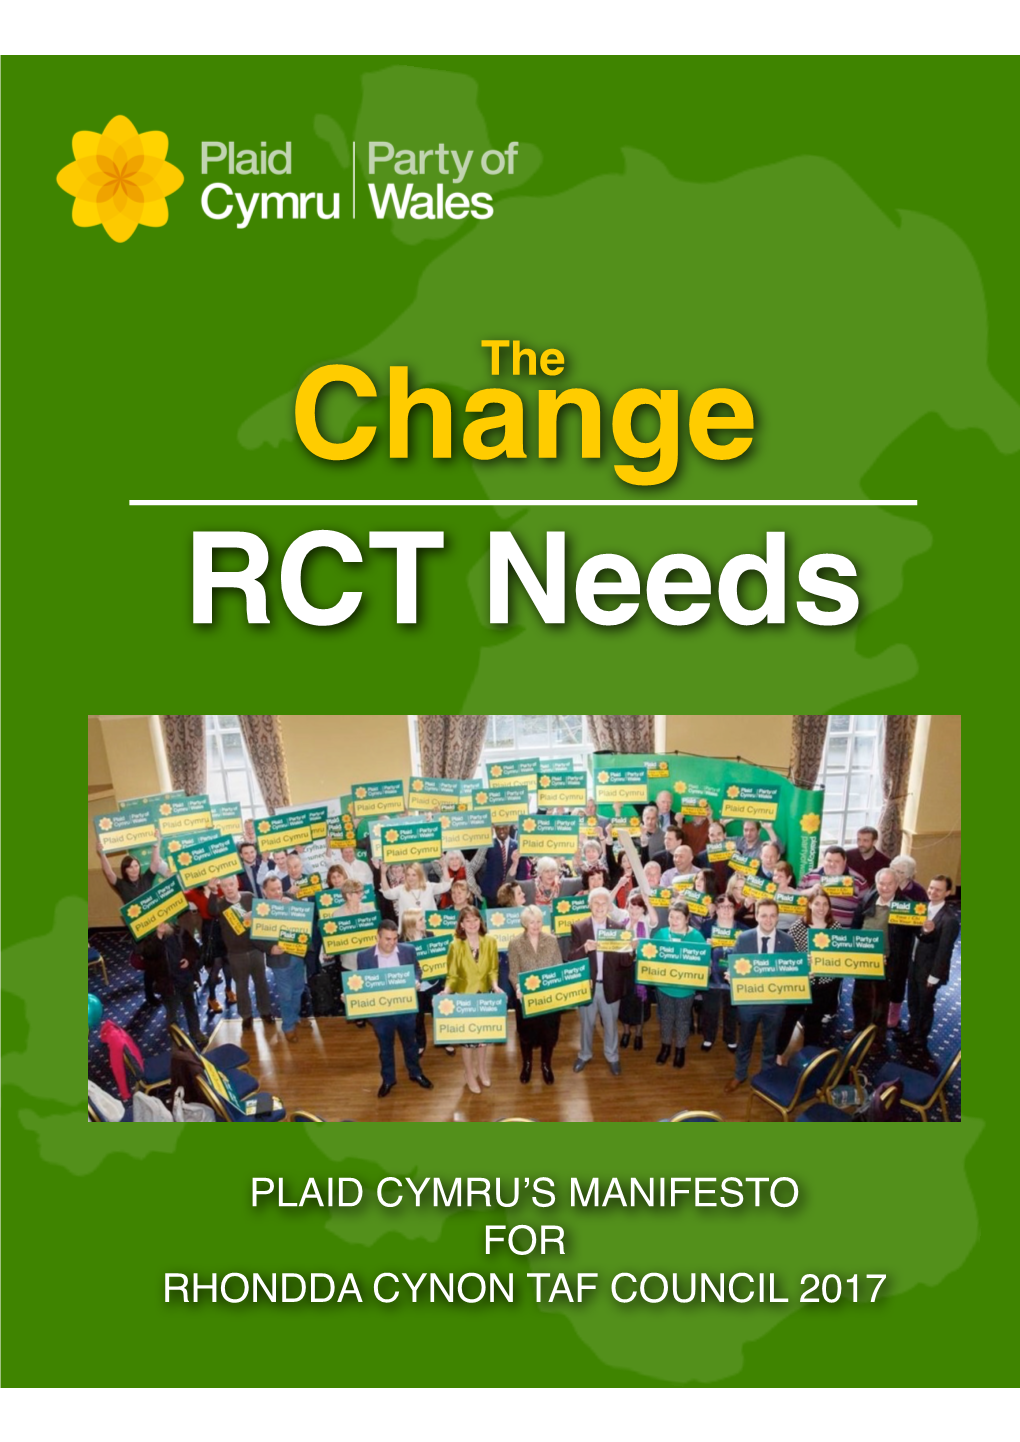 Plaid Cymru's Manifesto for Rhondda Cynon Taf Council